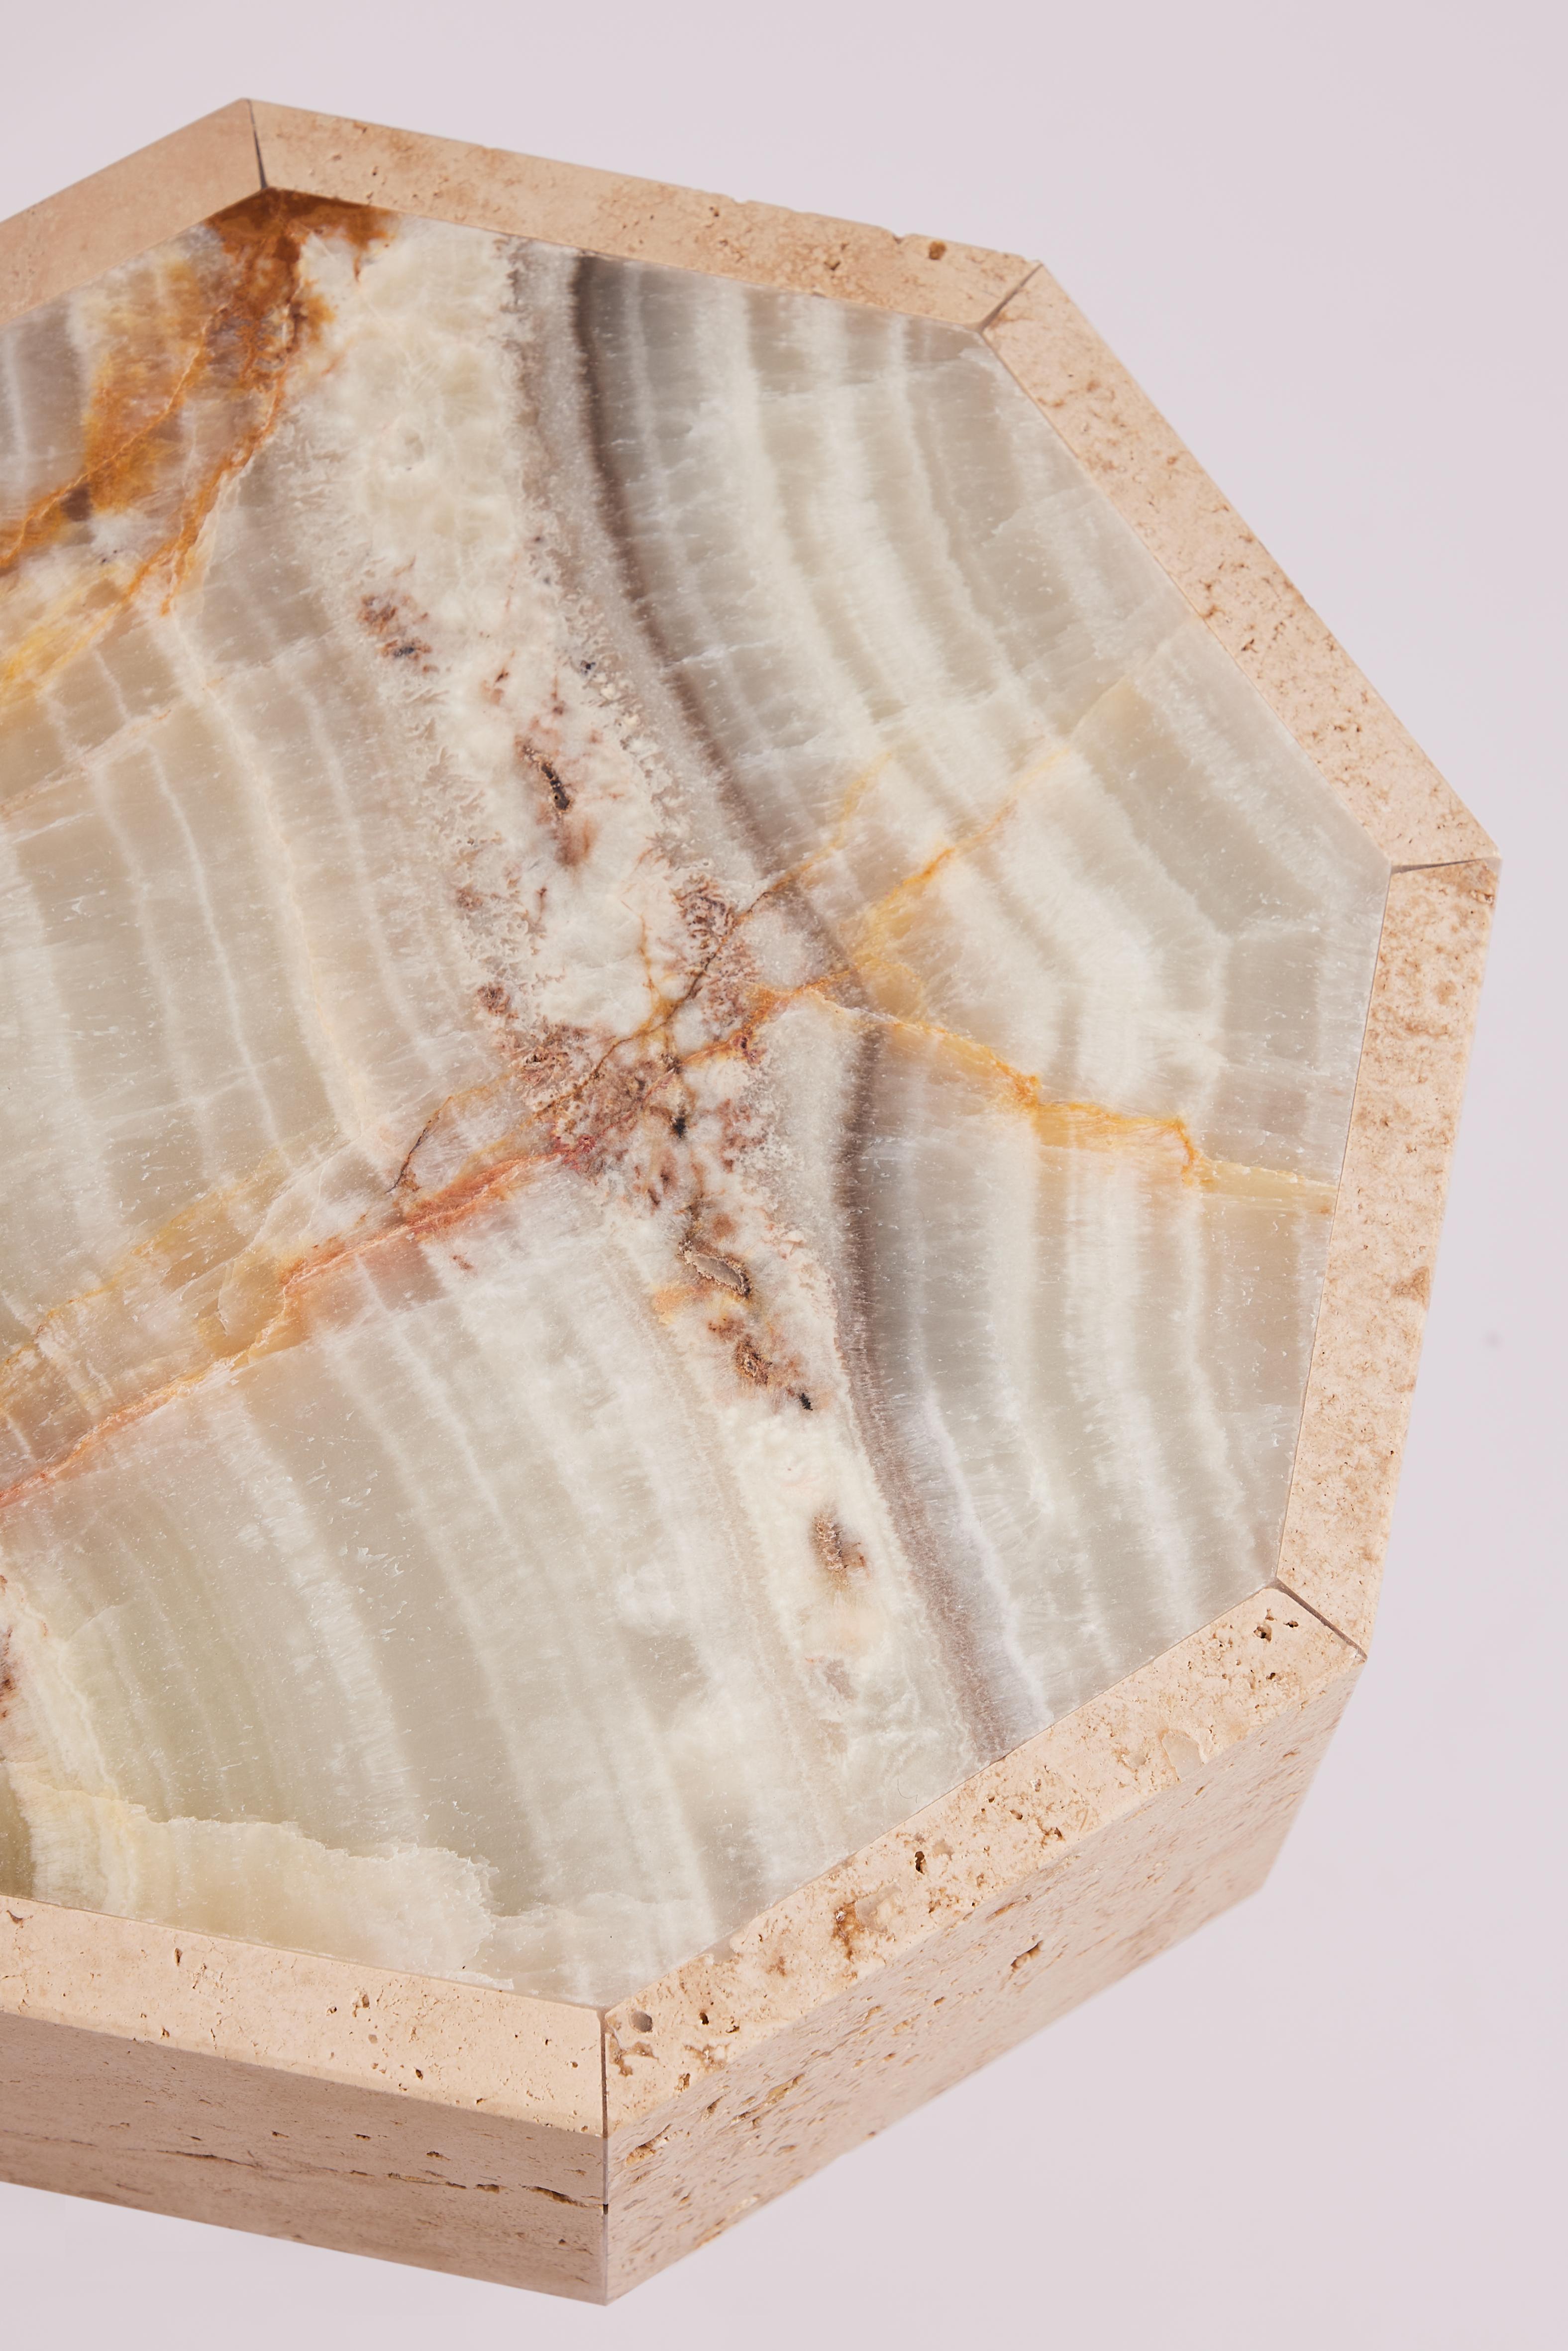 Der Beistelltisch Gisèle aus Onyx und Travertin besteht aus zwei Arten von Natursteinen, die für ihre einzigartige Schönheit und Langlebigkeit bekannt sind.

Der Beistelltisch Gisèle verkörpert die Verbindung von natürlicher Eleganz und innovativem